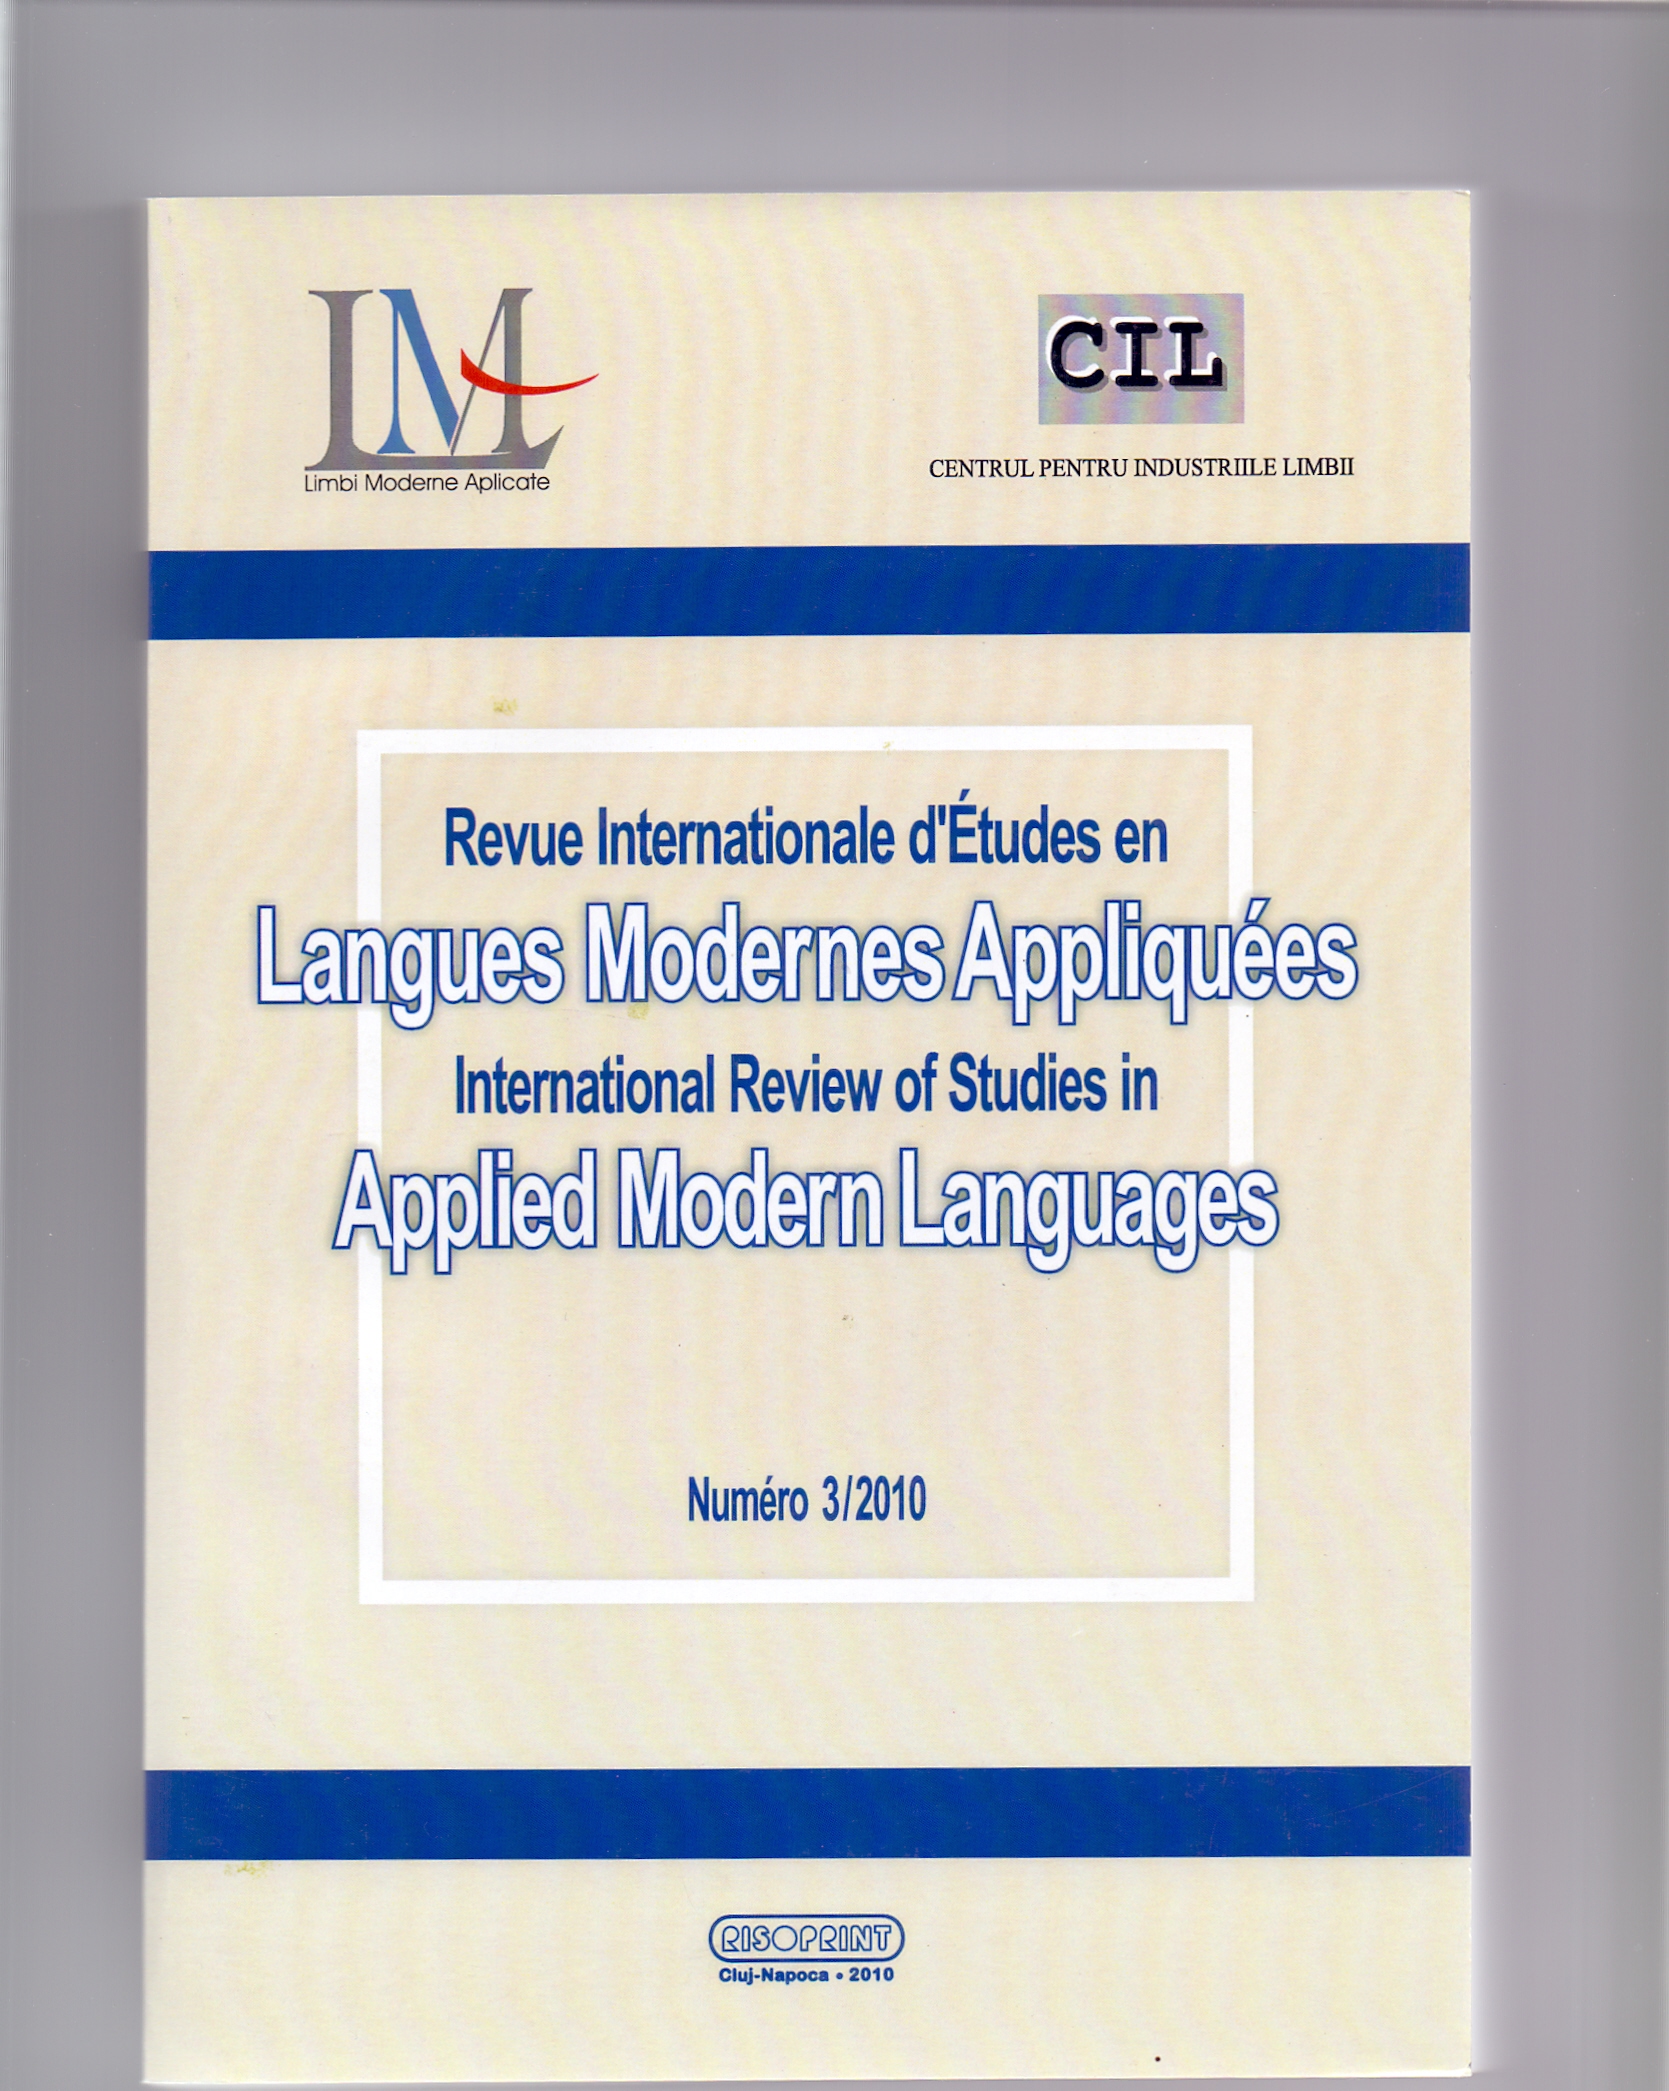 Silvia Irimiea, Text Linguistics, Presa Universitară Clujeană, Cluj-Napoca, 2008, 229 p. Cover Image